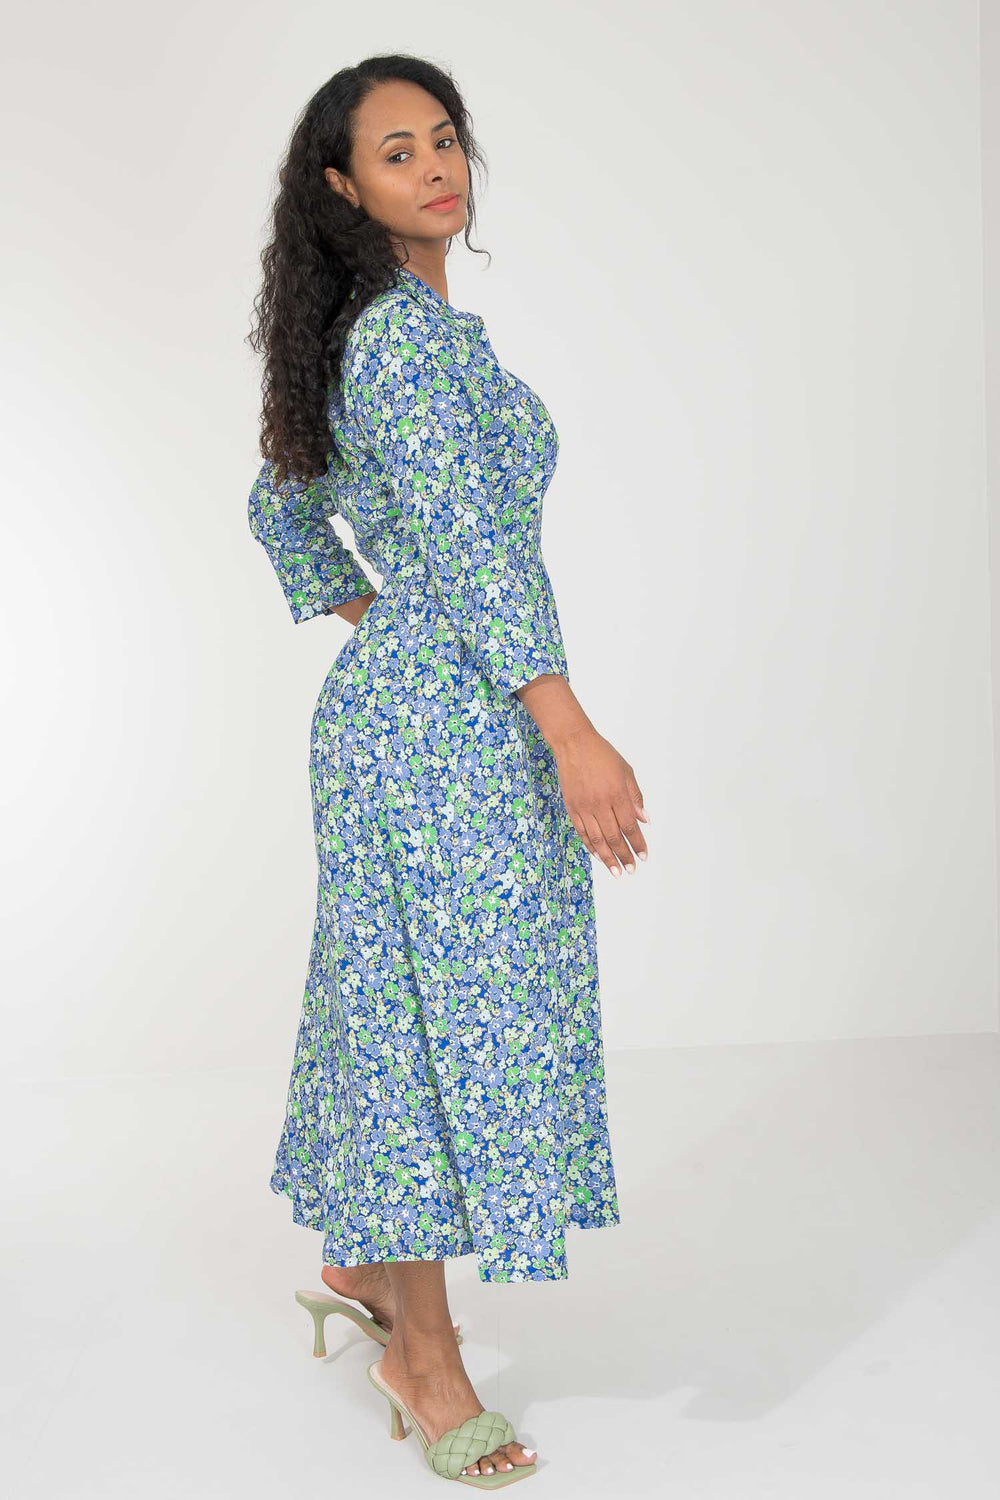 Pure EcoVero woven viscose midi dress - Green-blue flowers - Grønnblå mønstret legglang skjortekjole 